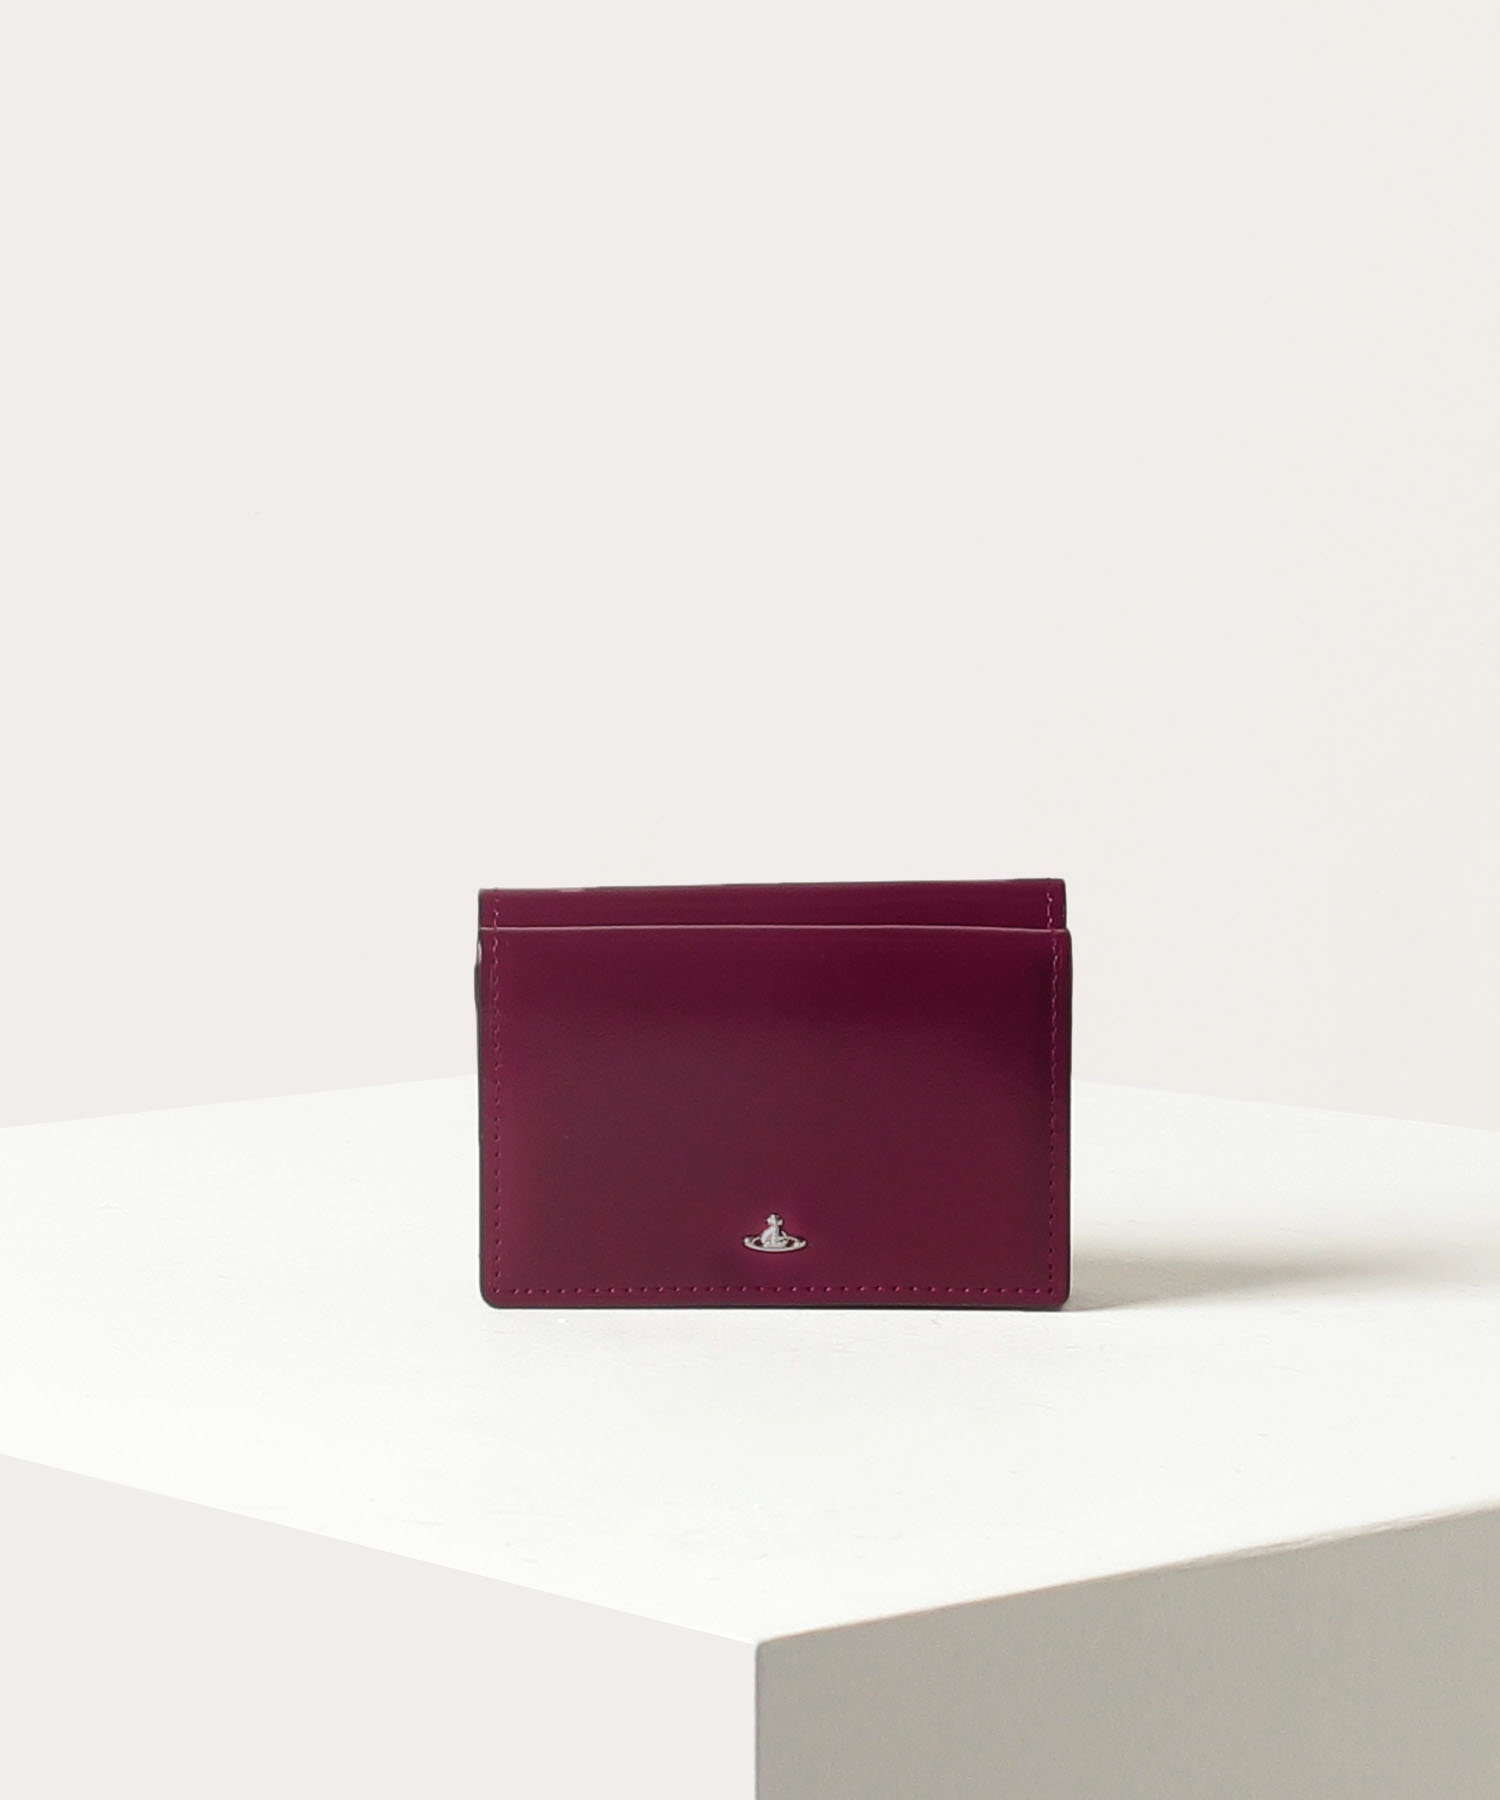 人気のミニ財布はVivienne WestwoodのADVANです